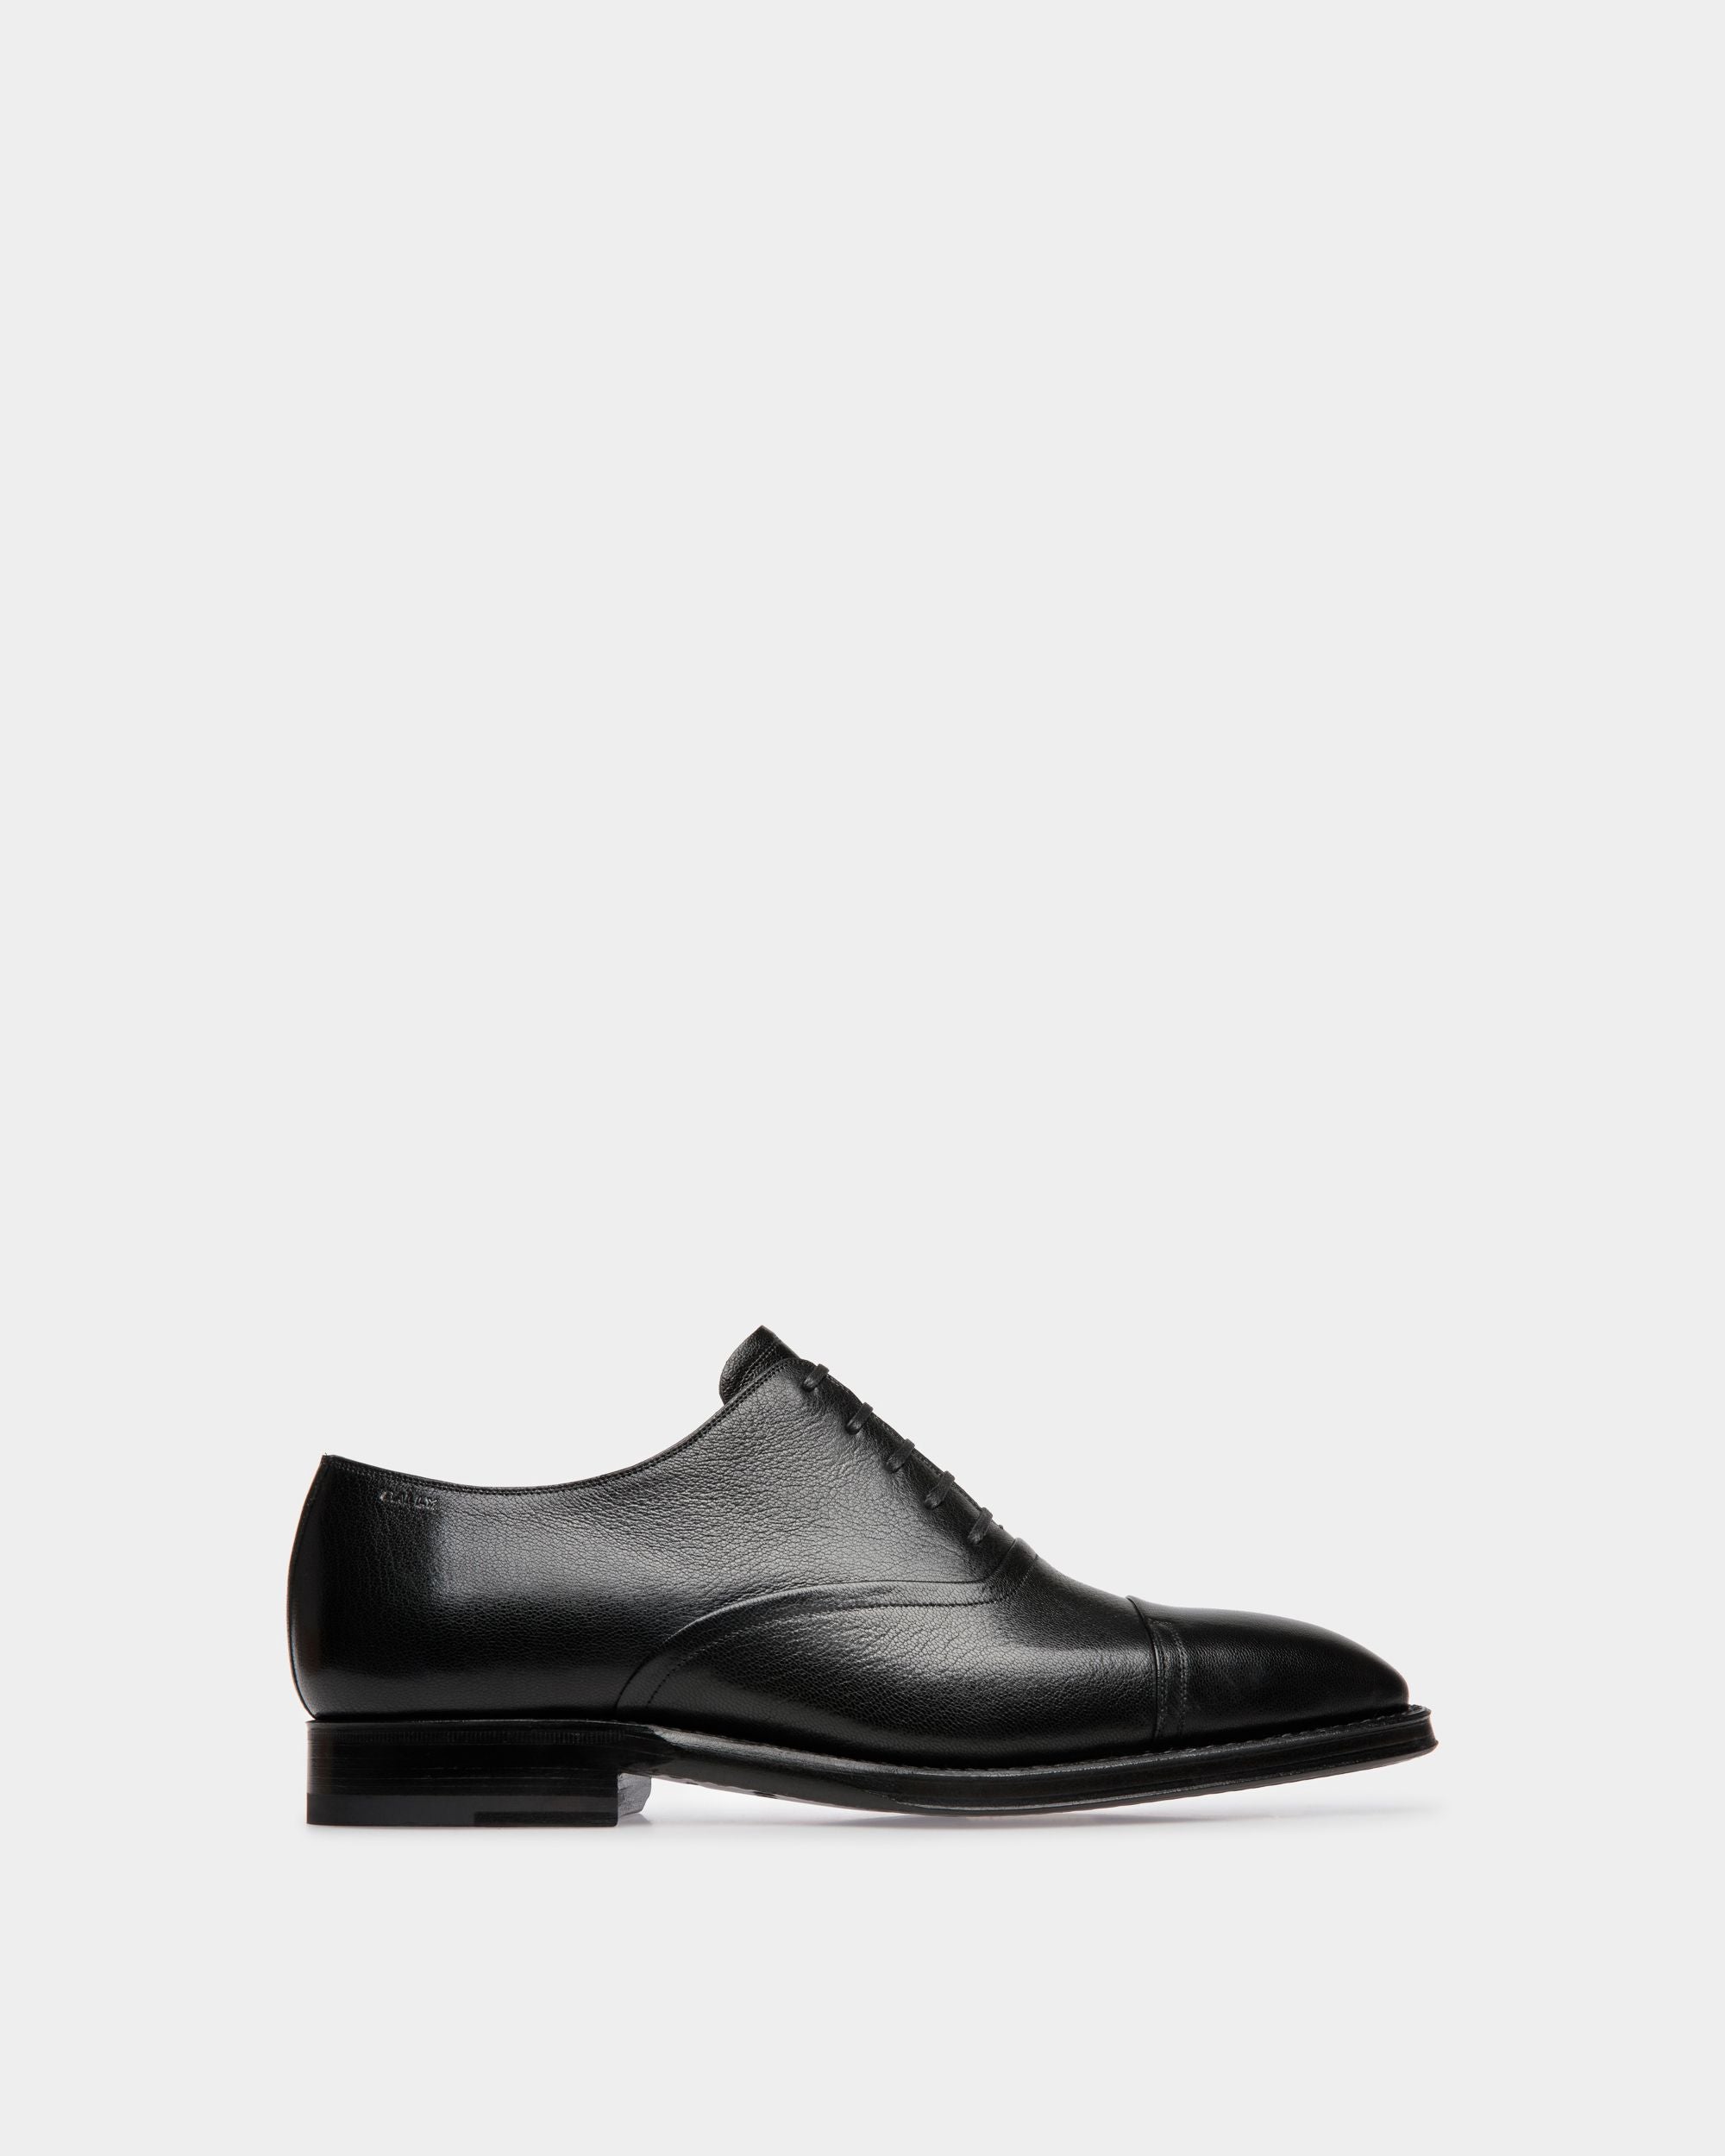 Scribe | Oxford-Schuhe für Herren aus genarbtem Leder in Schwarz | Bally | Still Life Seite